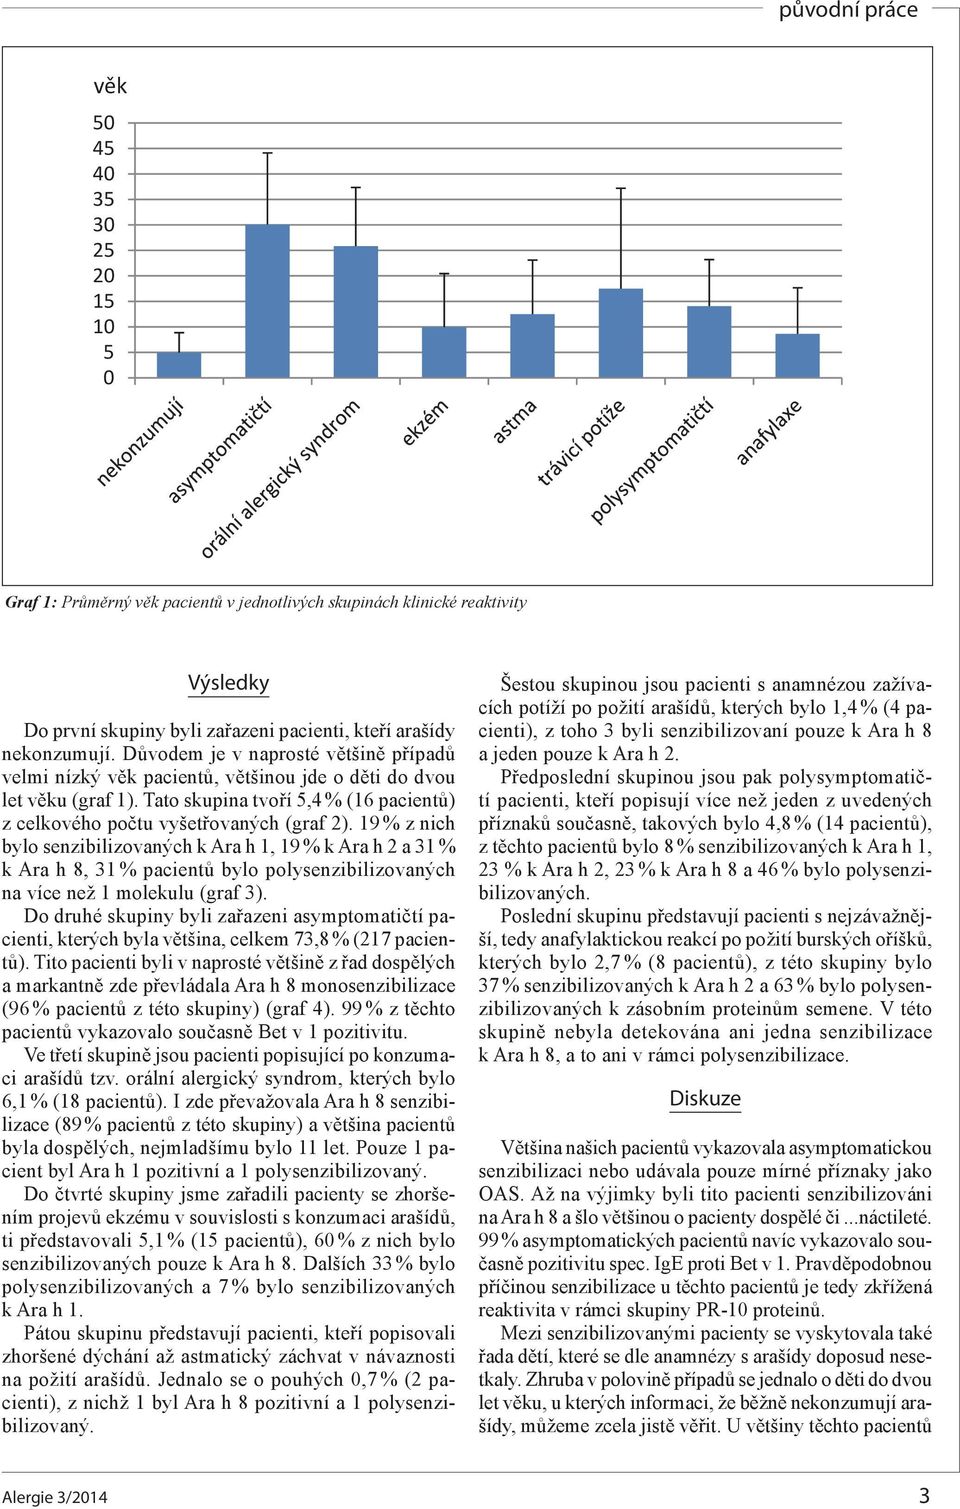 19 % z nich bylo senzibilizovaných k Ara h 1, 19 % k Ara h 2 a 31 % k Ara h 8, 31 % pacientů bylo polysenzibilizovaných na více než 1 molekulu (graf 3).